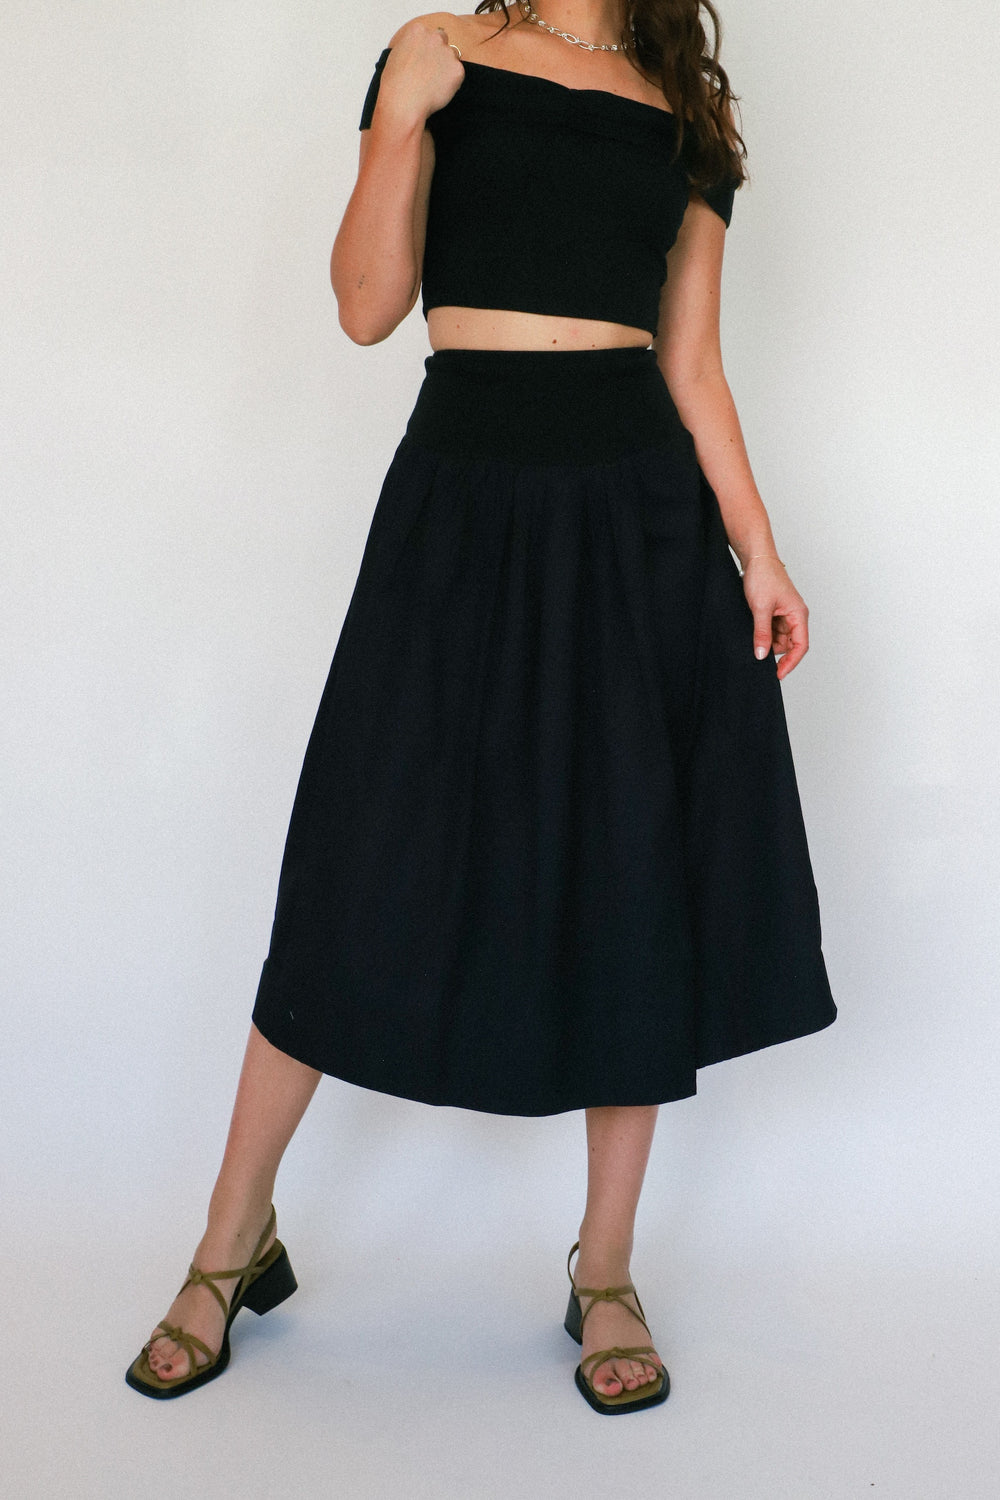 Black Cooler In Capri Skirt Set